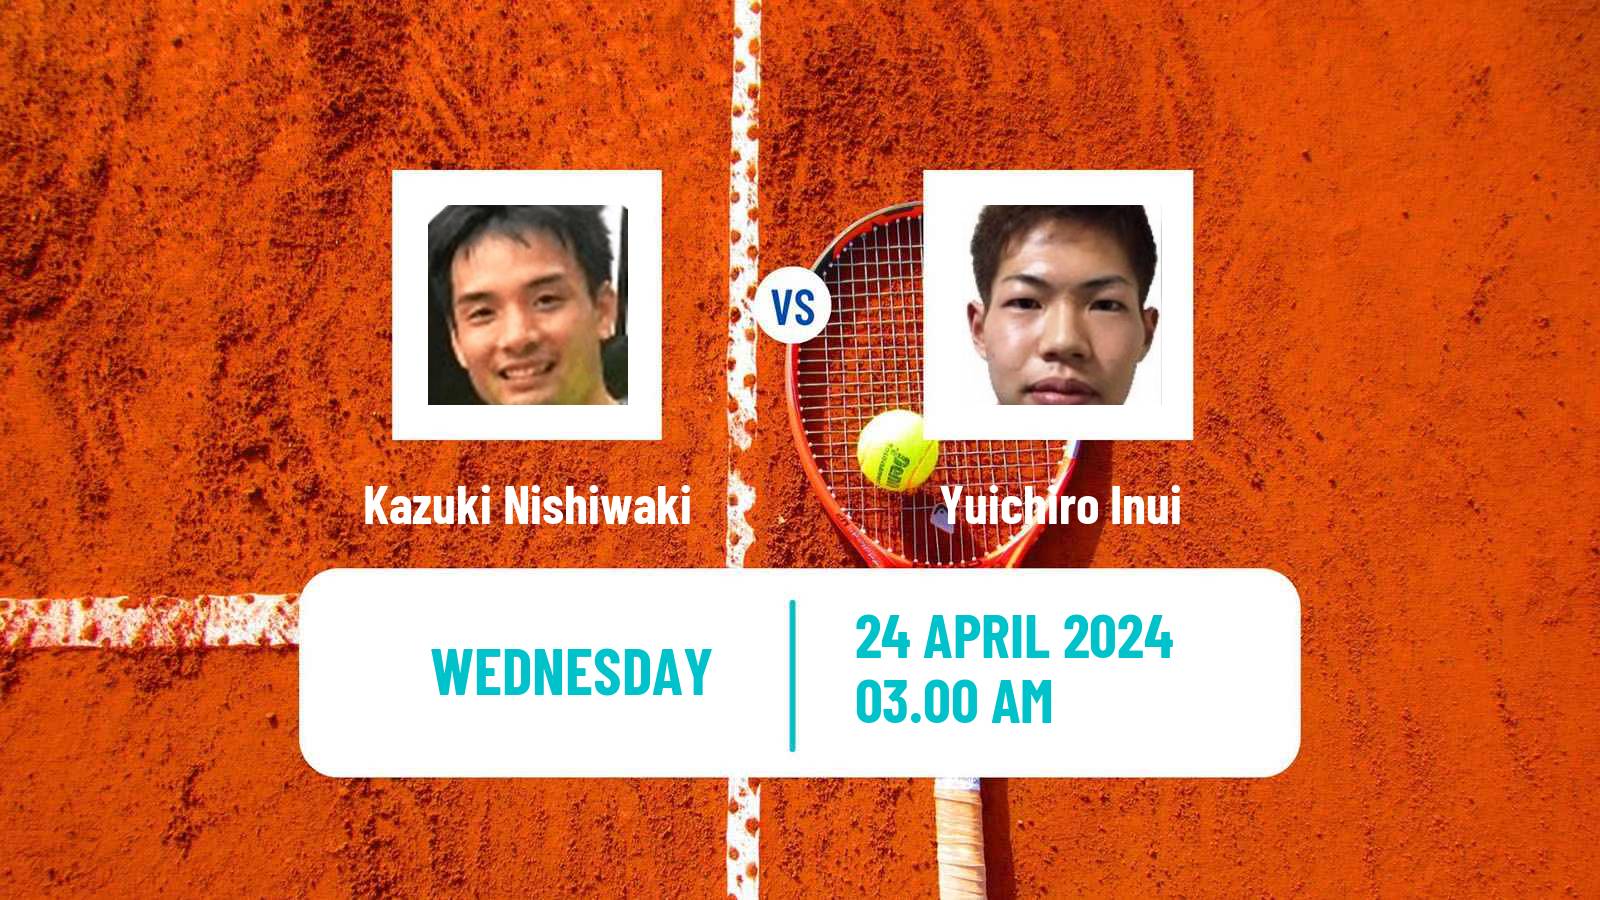 Tennis ITF M15 Shymkent 2 Men Kazuki Nishiwaki - Yuichiro Inui